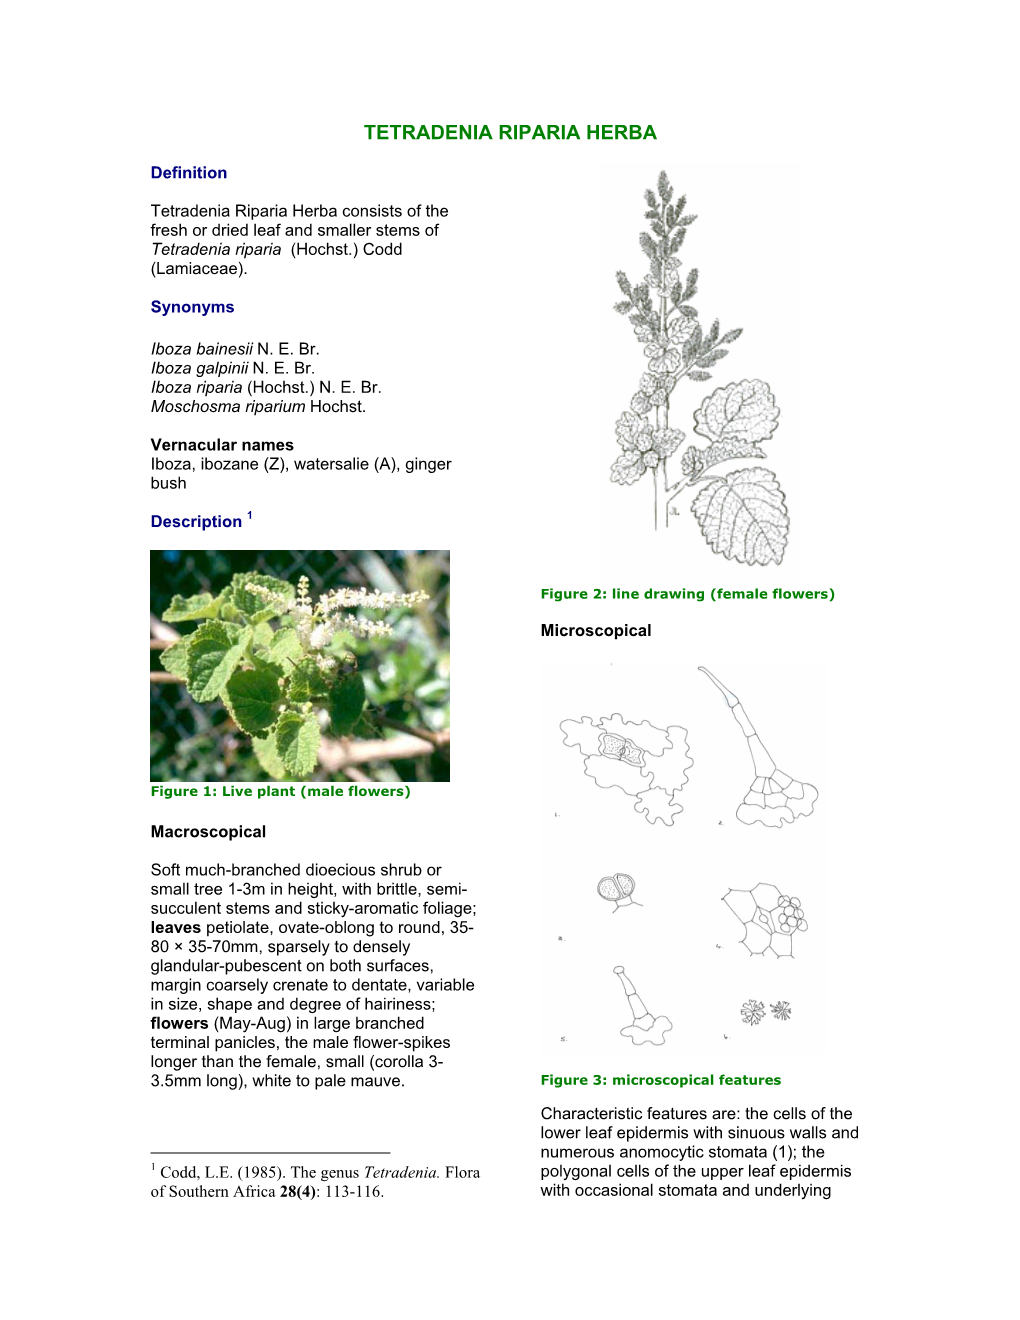 Tetradenia Riparia Herba